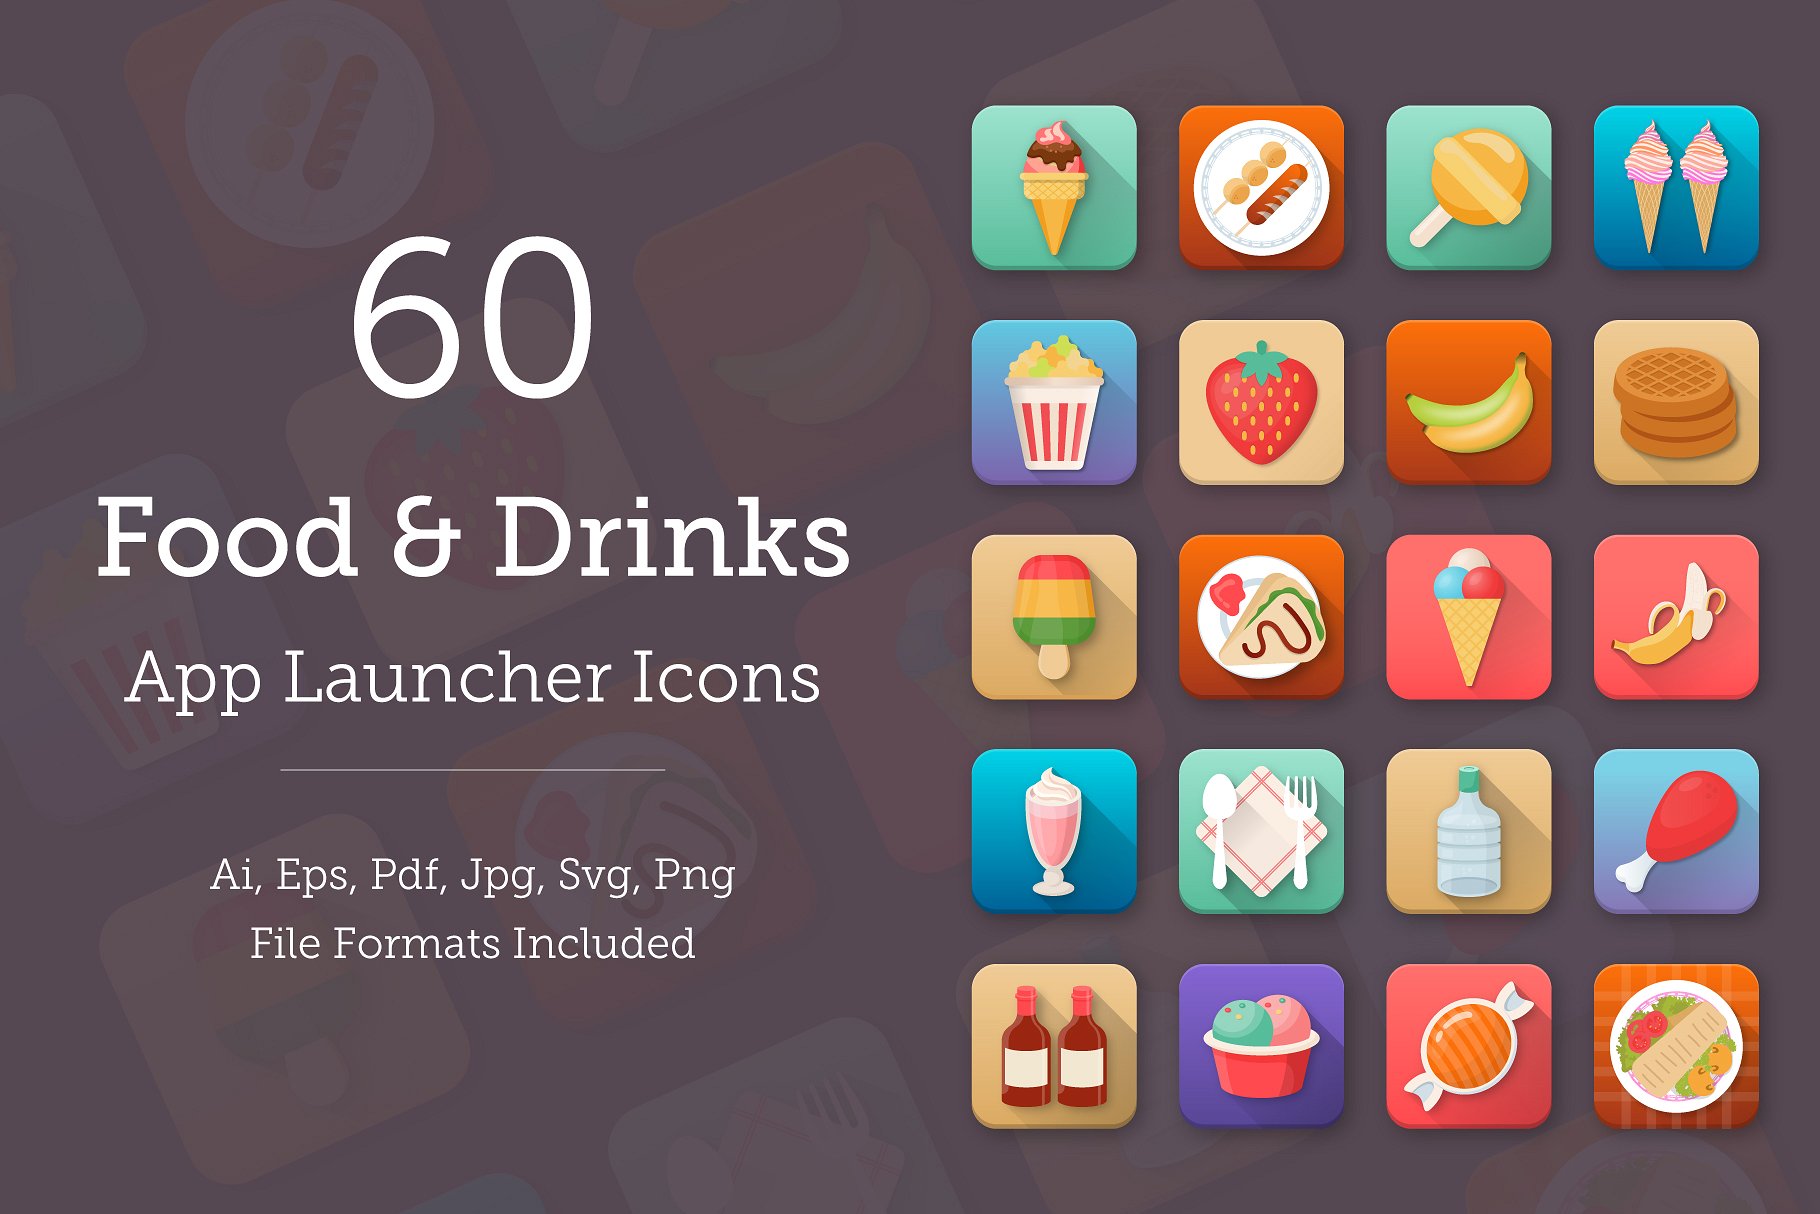 60款创意食品饮料app图标 60 Food and Drinks App Icons插图